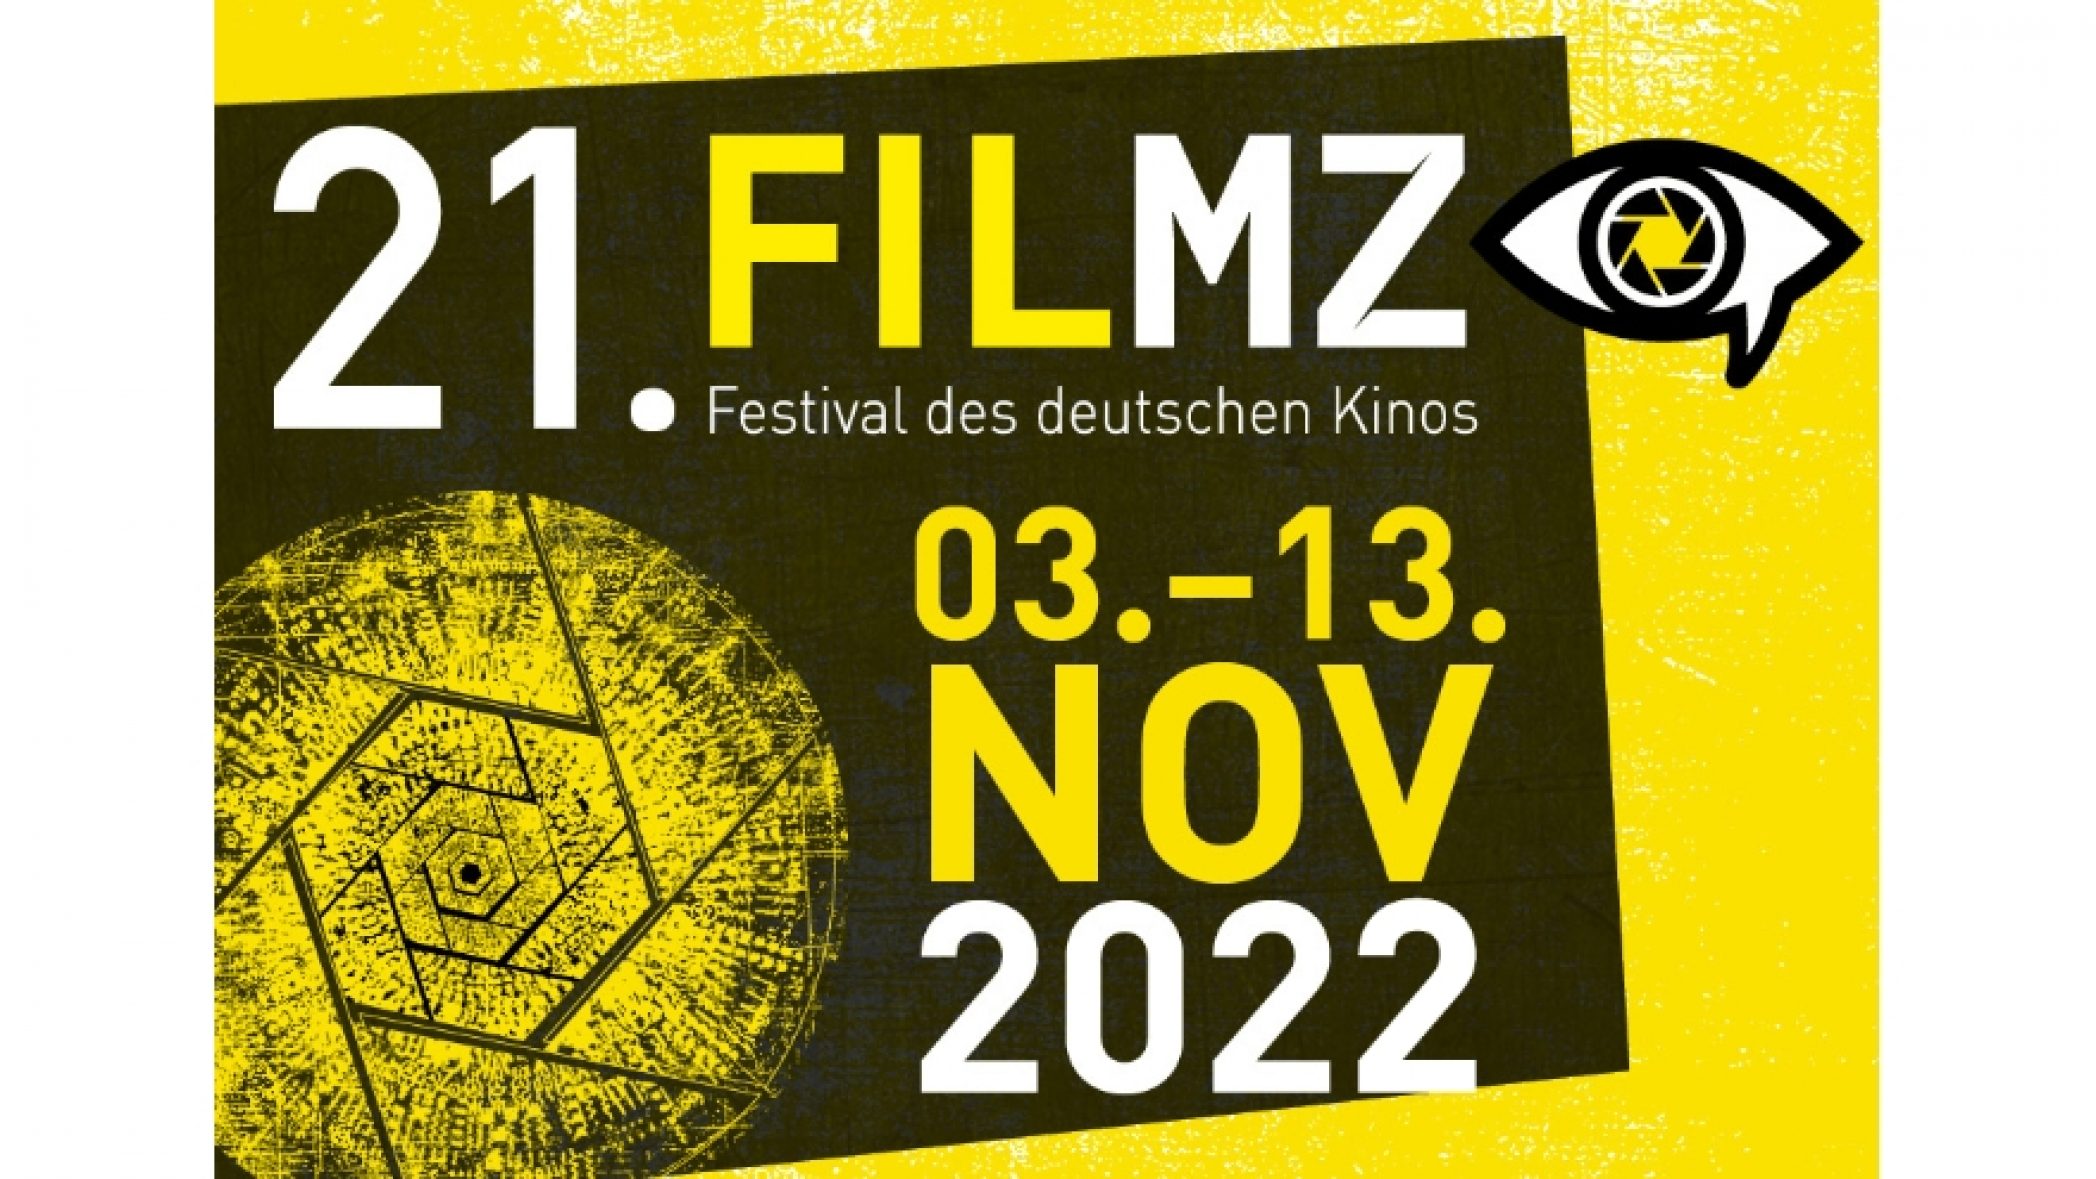 FILMZ Festival des deutschen Kinos 2022